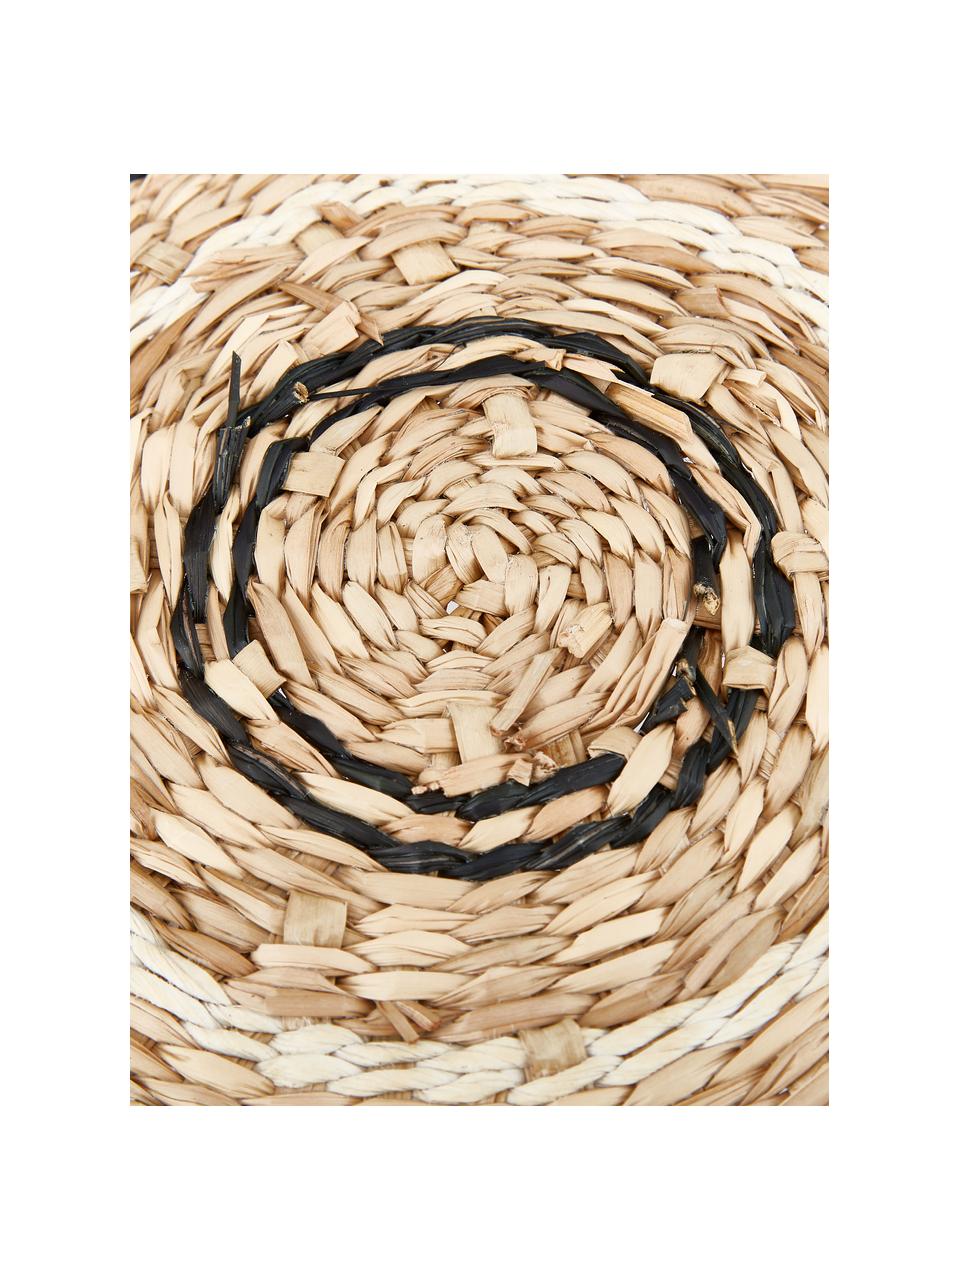 Okrúhle prestieranie z morskej trávy Kama, Morská tráva, Béžová, biela, čierna, Ø 38 cm